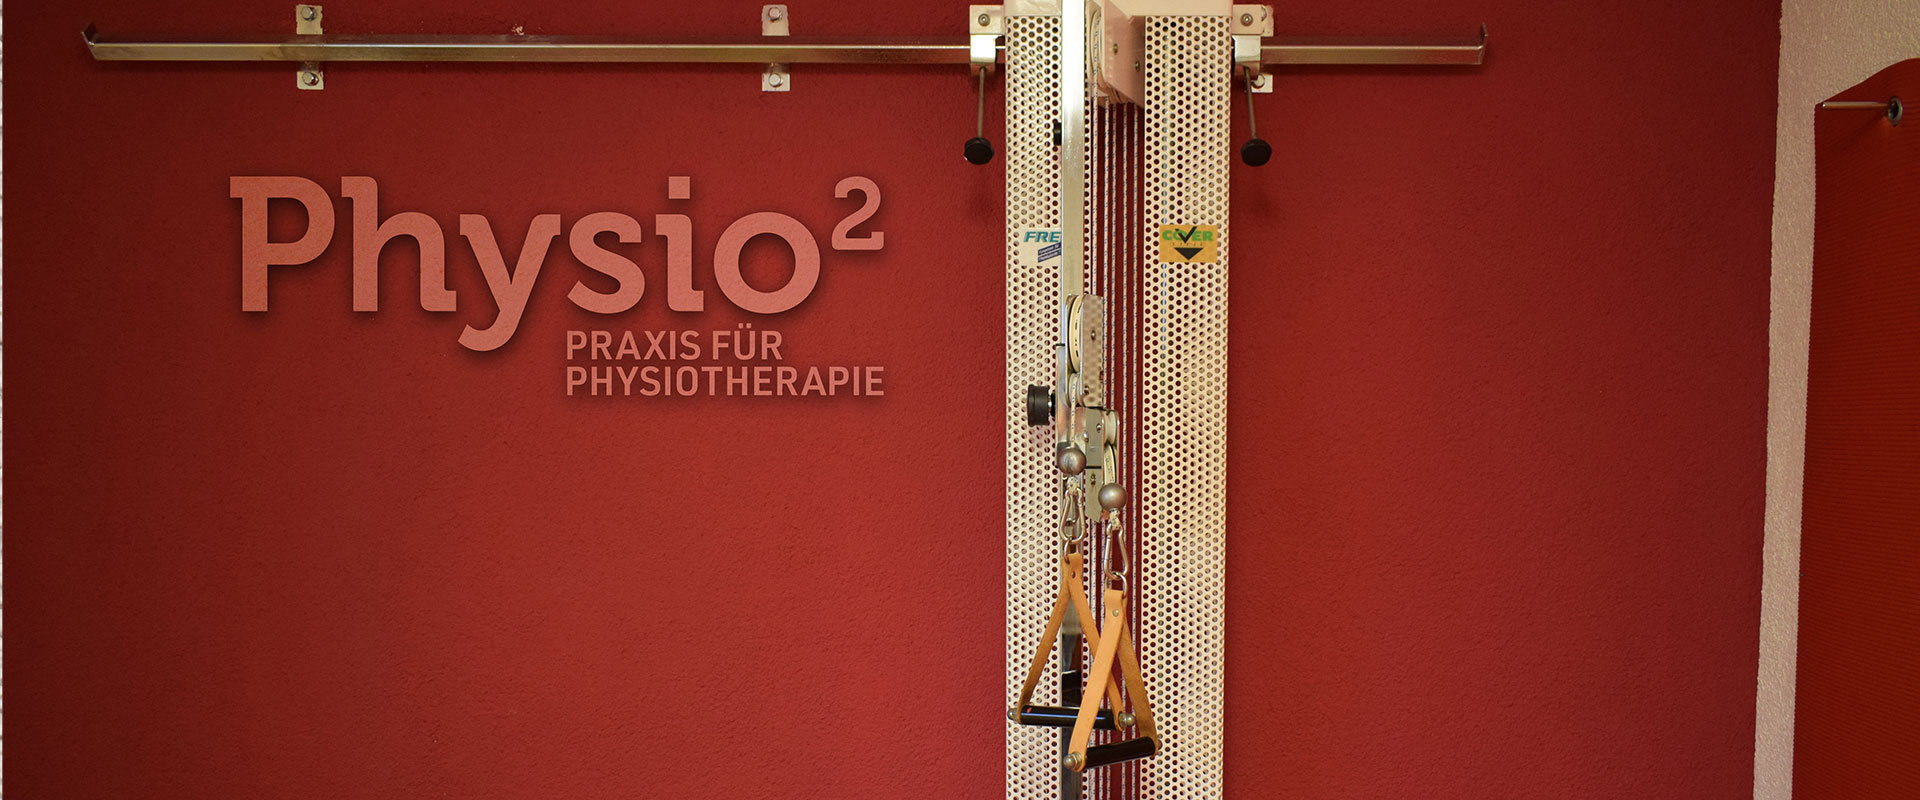 Physio² - Praxisgemeinschaft für Physiotherapie